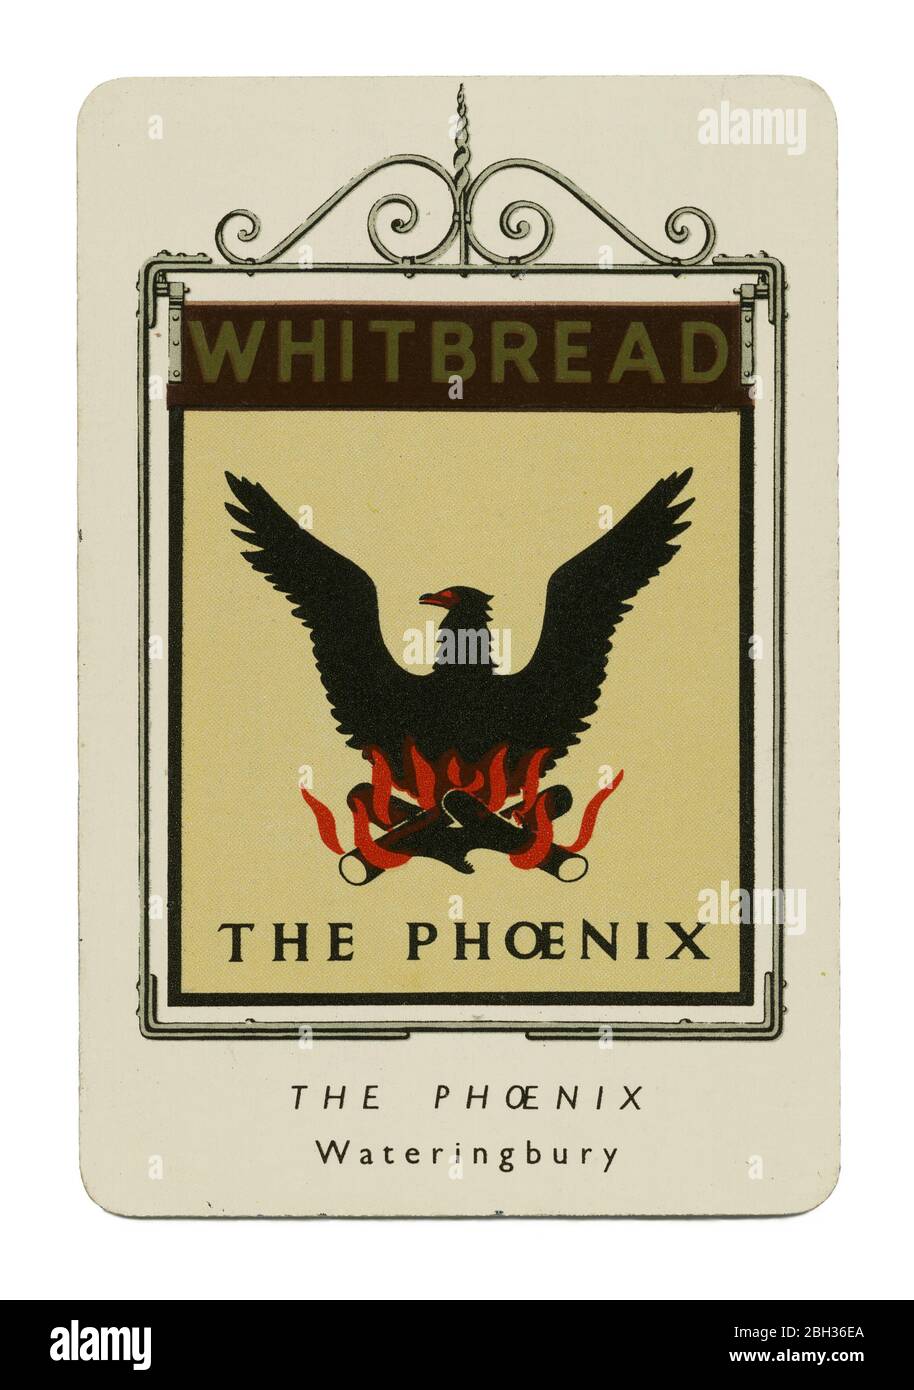 Ein 1949 Miniatur-Metallandenkmal für Pub-Zeichen für Whitbread's Brewery. Dieses Schild (Nummer 31 in Serie 1) zeigte den Phoenix, Red Hill, Wateringbury, Kent und wurde von Vena Chalker entworfen. Die Abbildung zeigt den mythologischen schwarzen phönix-Vogel über brennenden Holzstämmen. Stockfoto